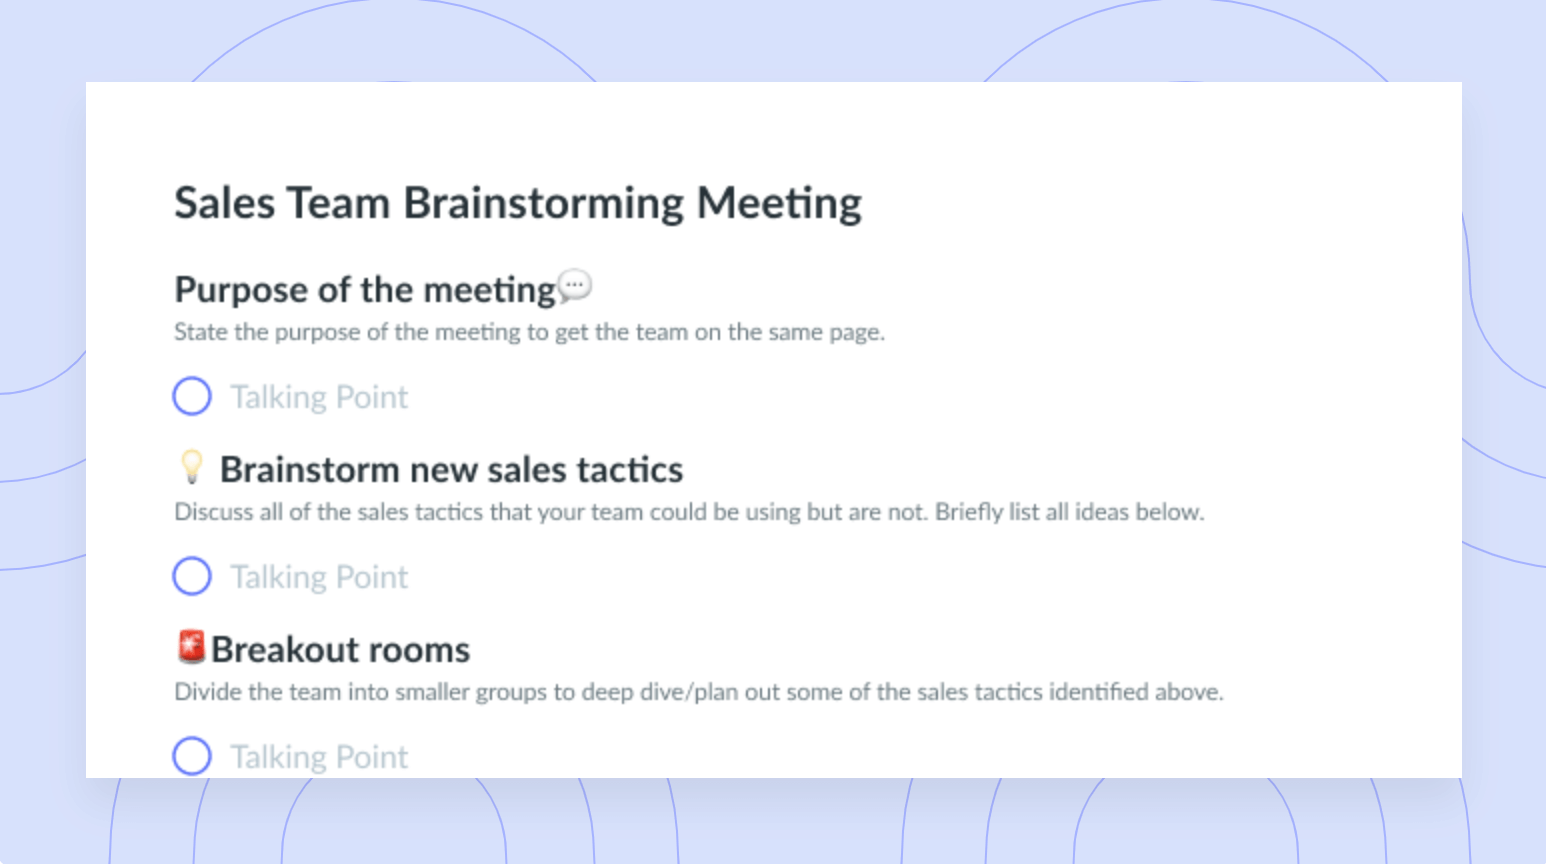 Sales Team Brainstorm Meeting Template